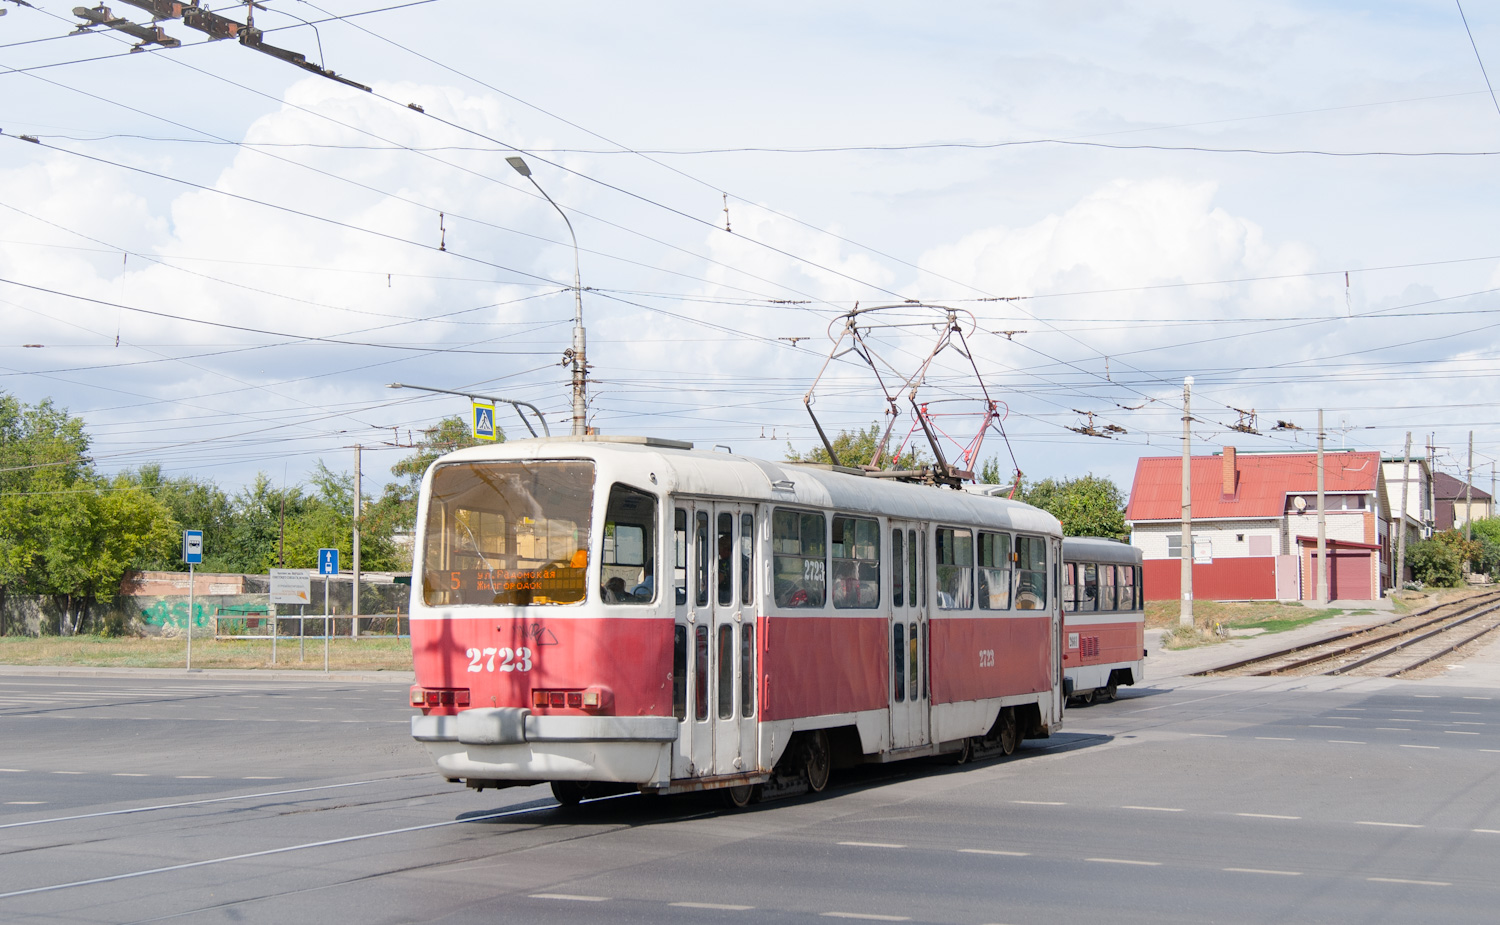 Volgograd, Tatra T3SU nr. 2723